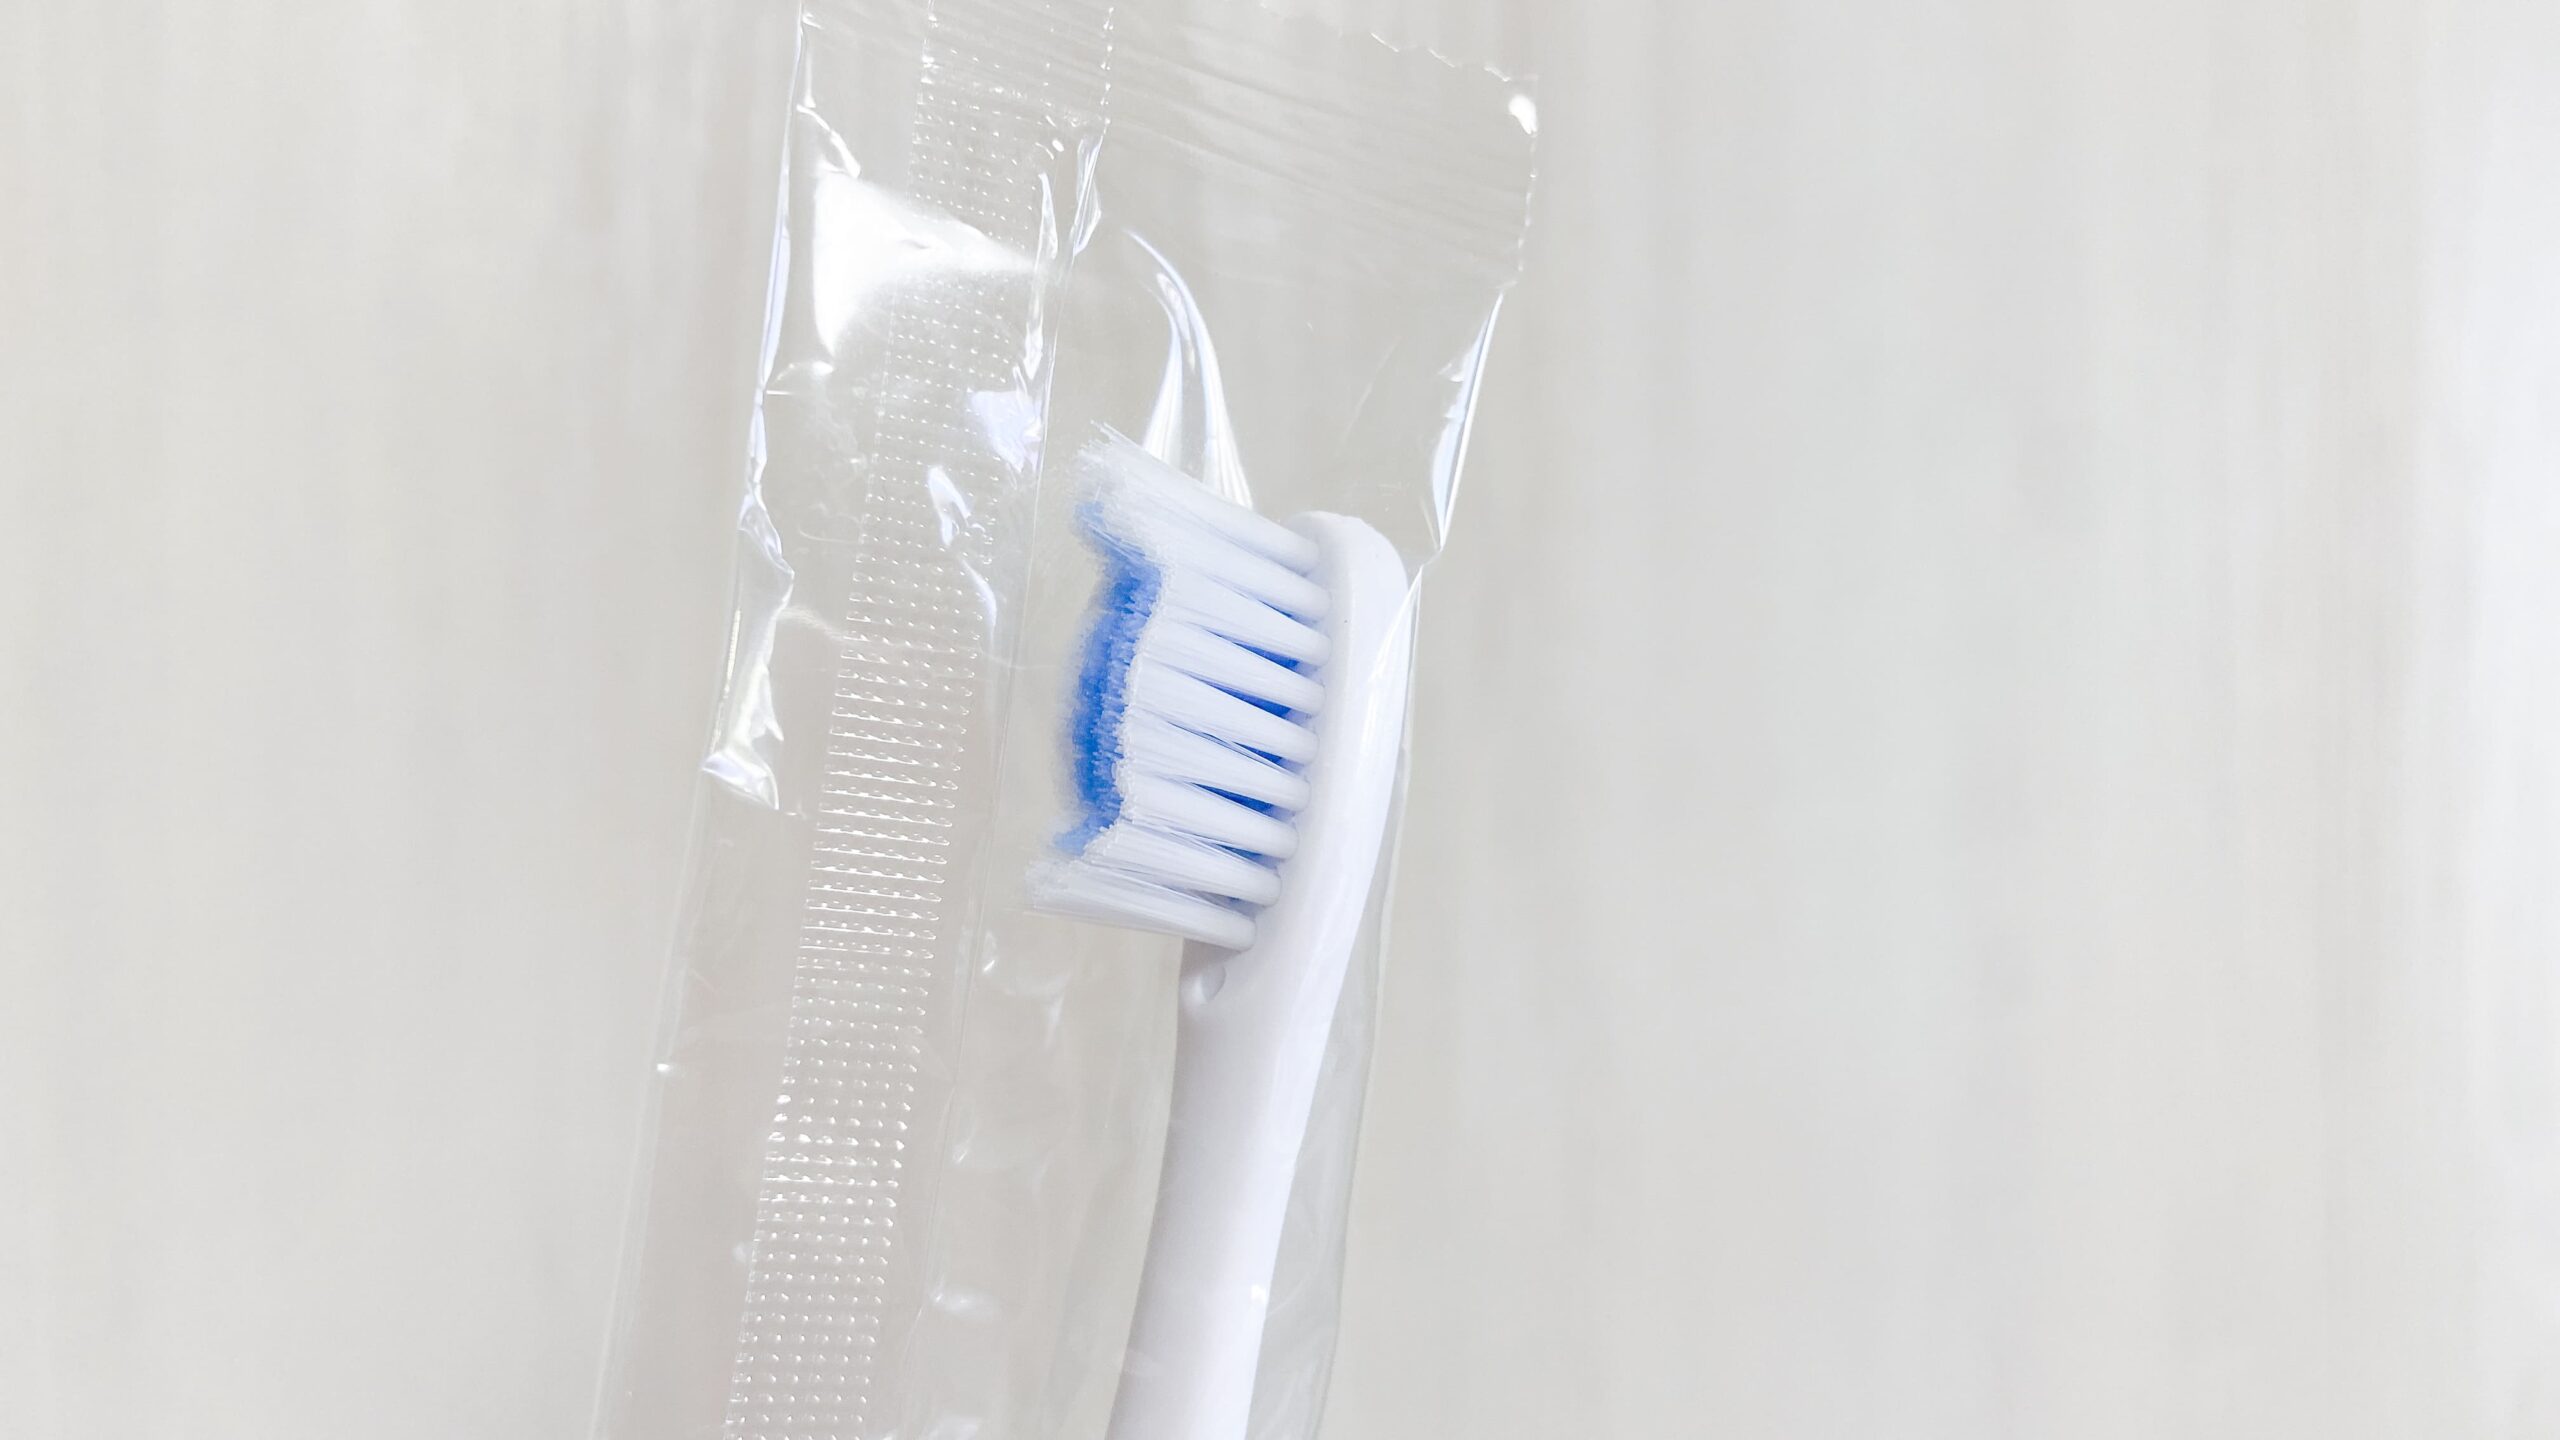 ガレイド電動歯ブラシの替え歯ブラシの先端詳細